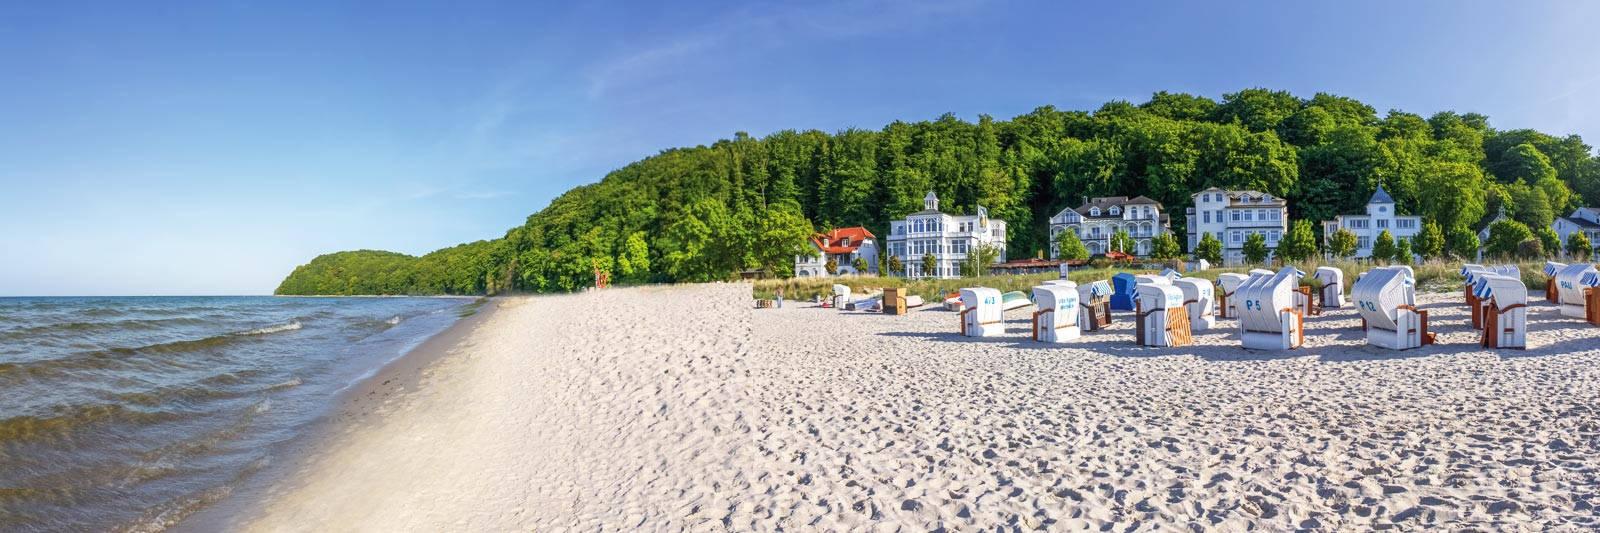 78 Ferienwohnungen und Ferienhäuser am Kummerower See - tourist-online.de